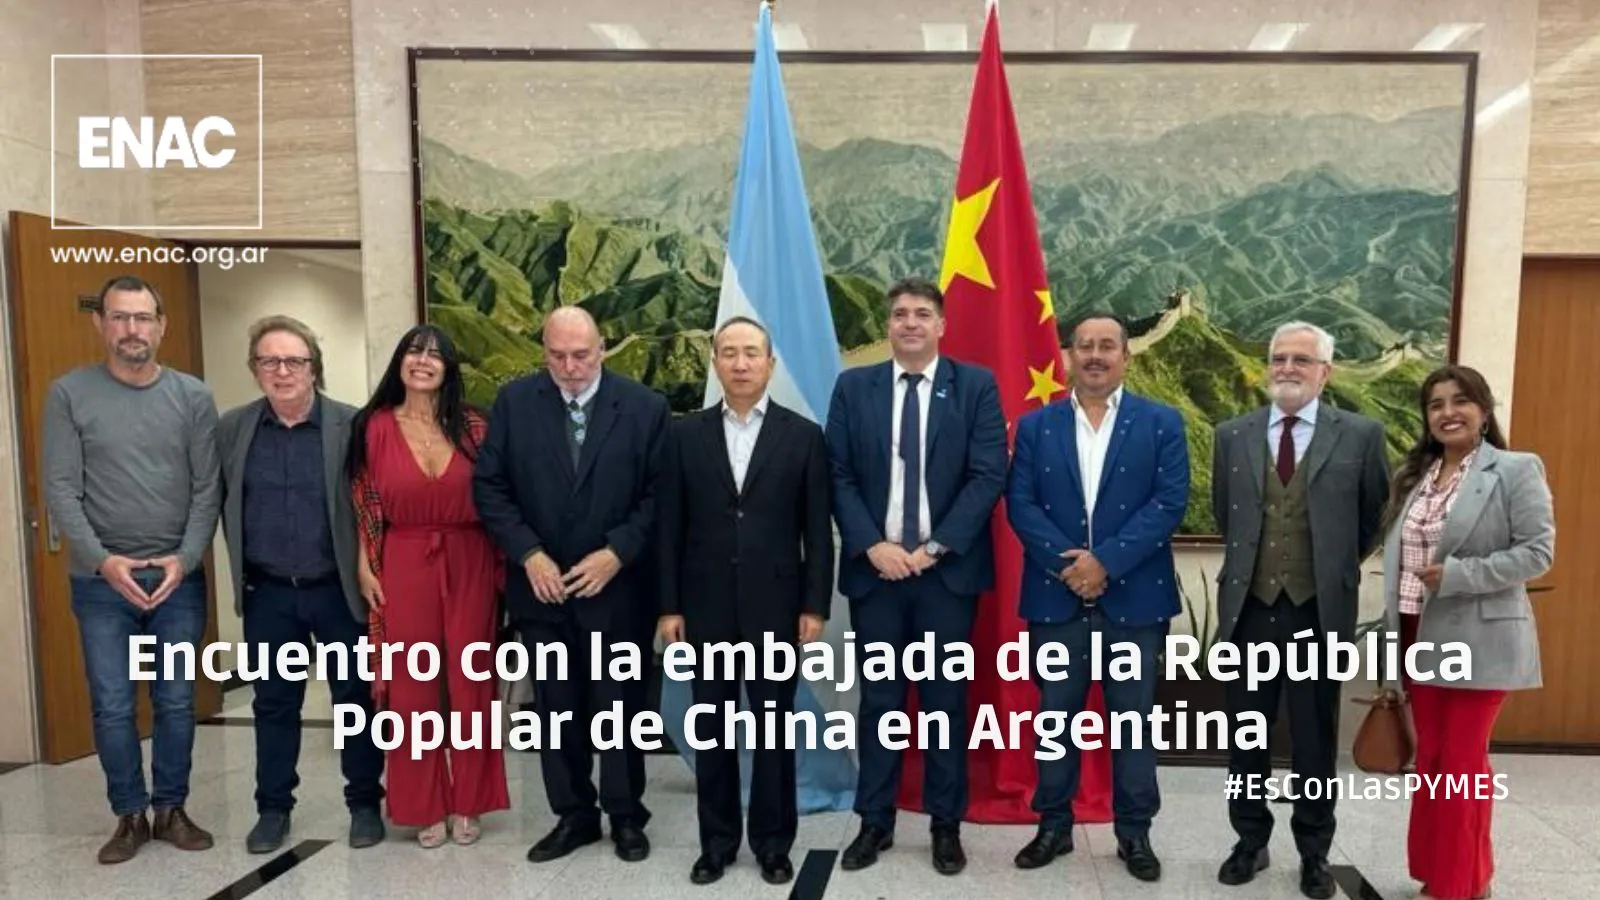 Embajada de la República Argentina en China